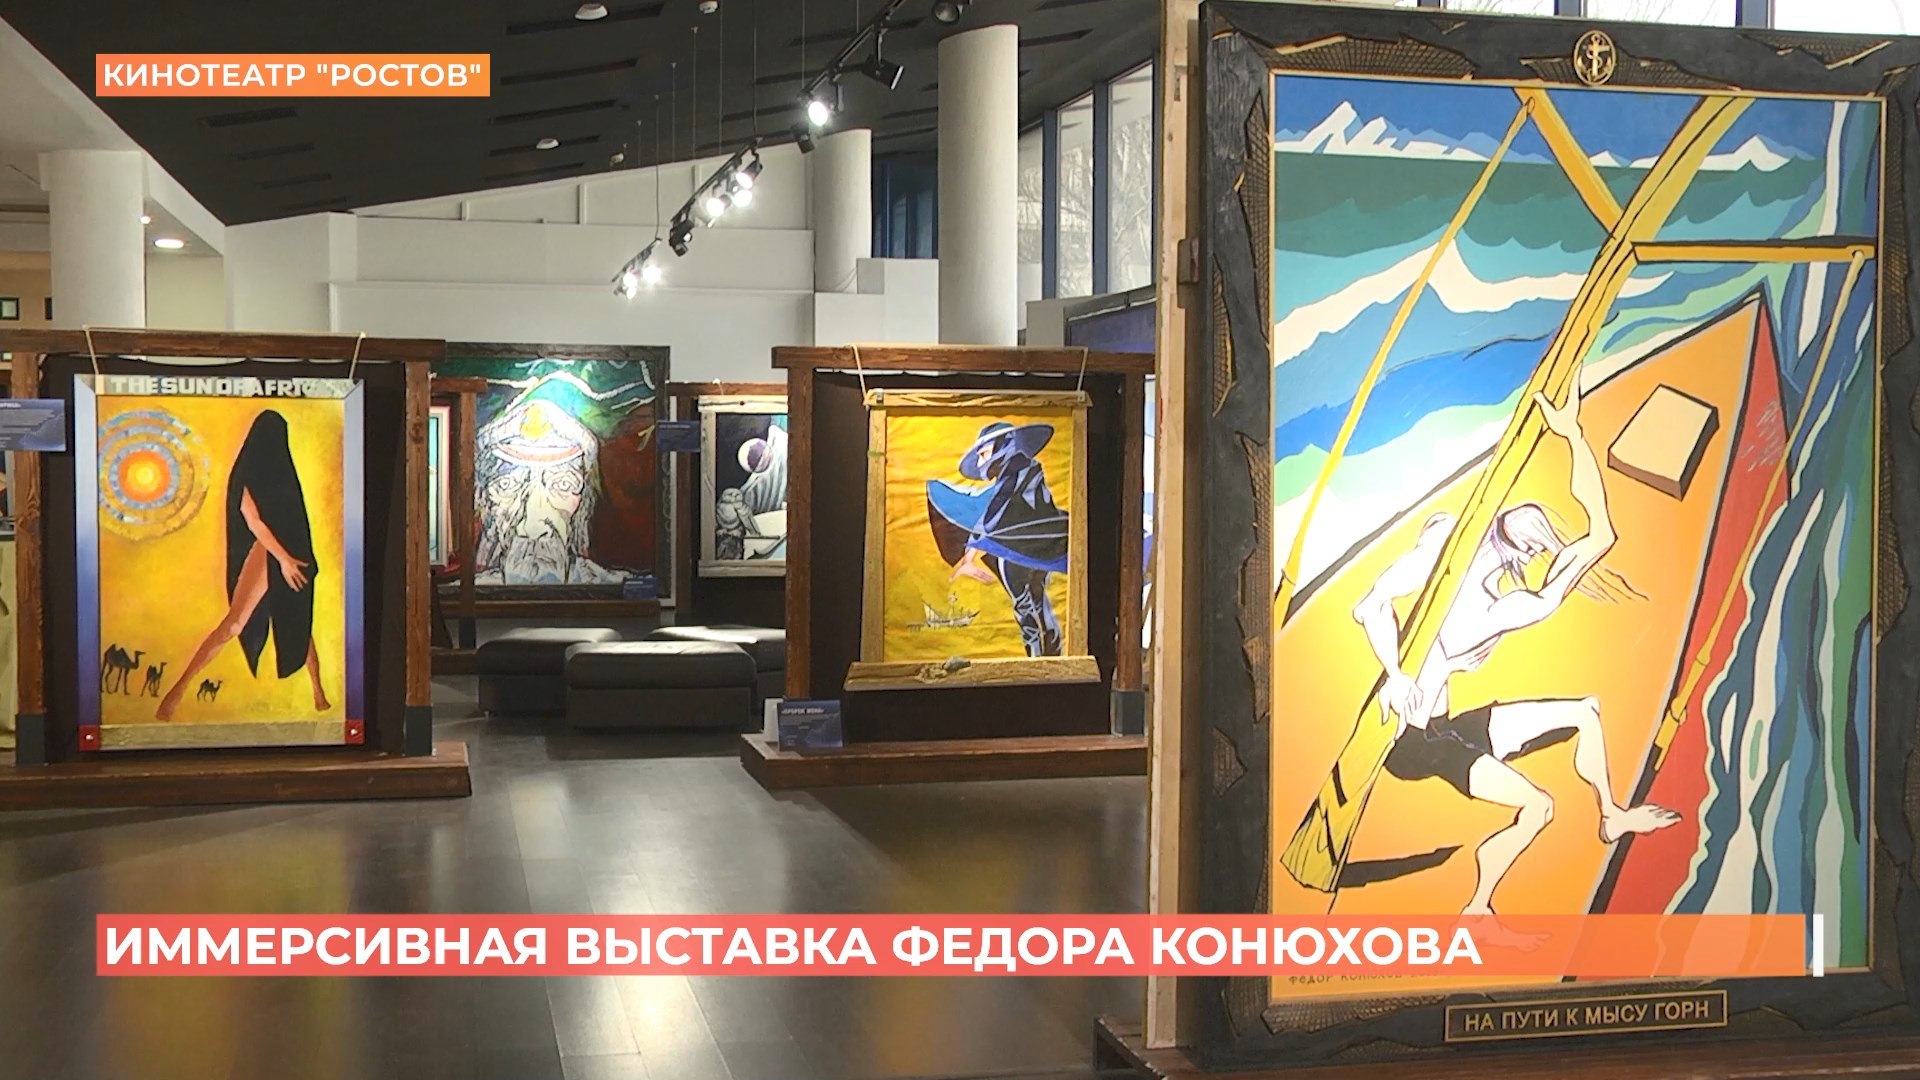 Иммерсивная выставка путешественника Федора Конюхова открылась в Ростове